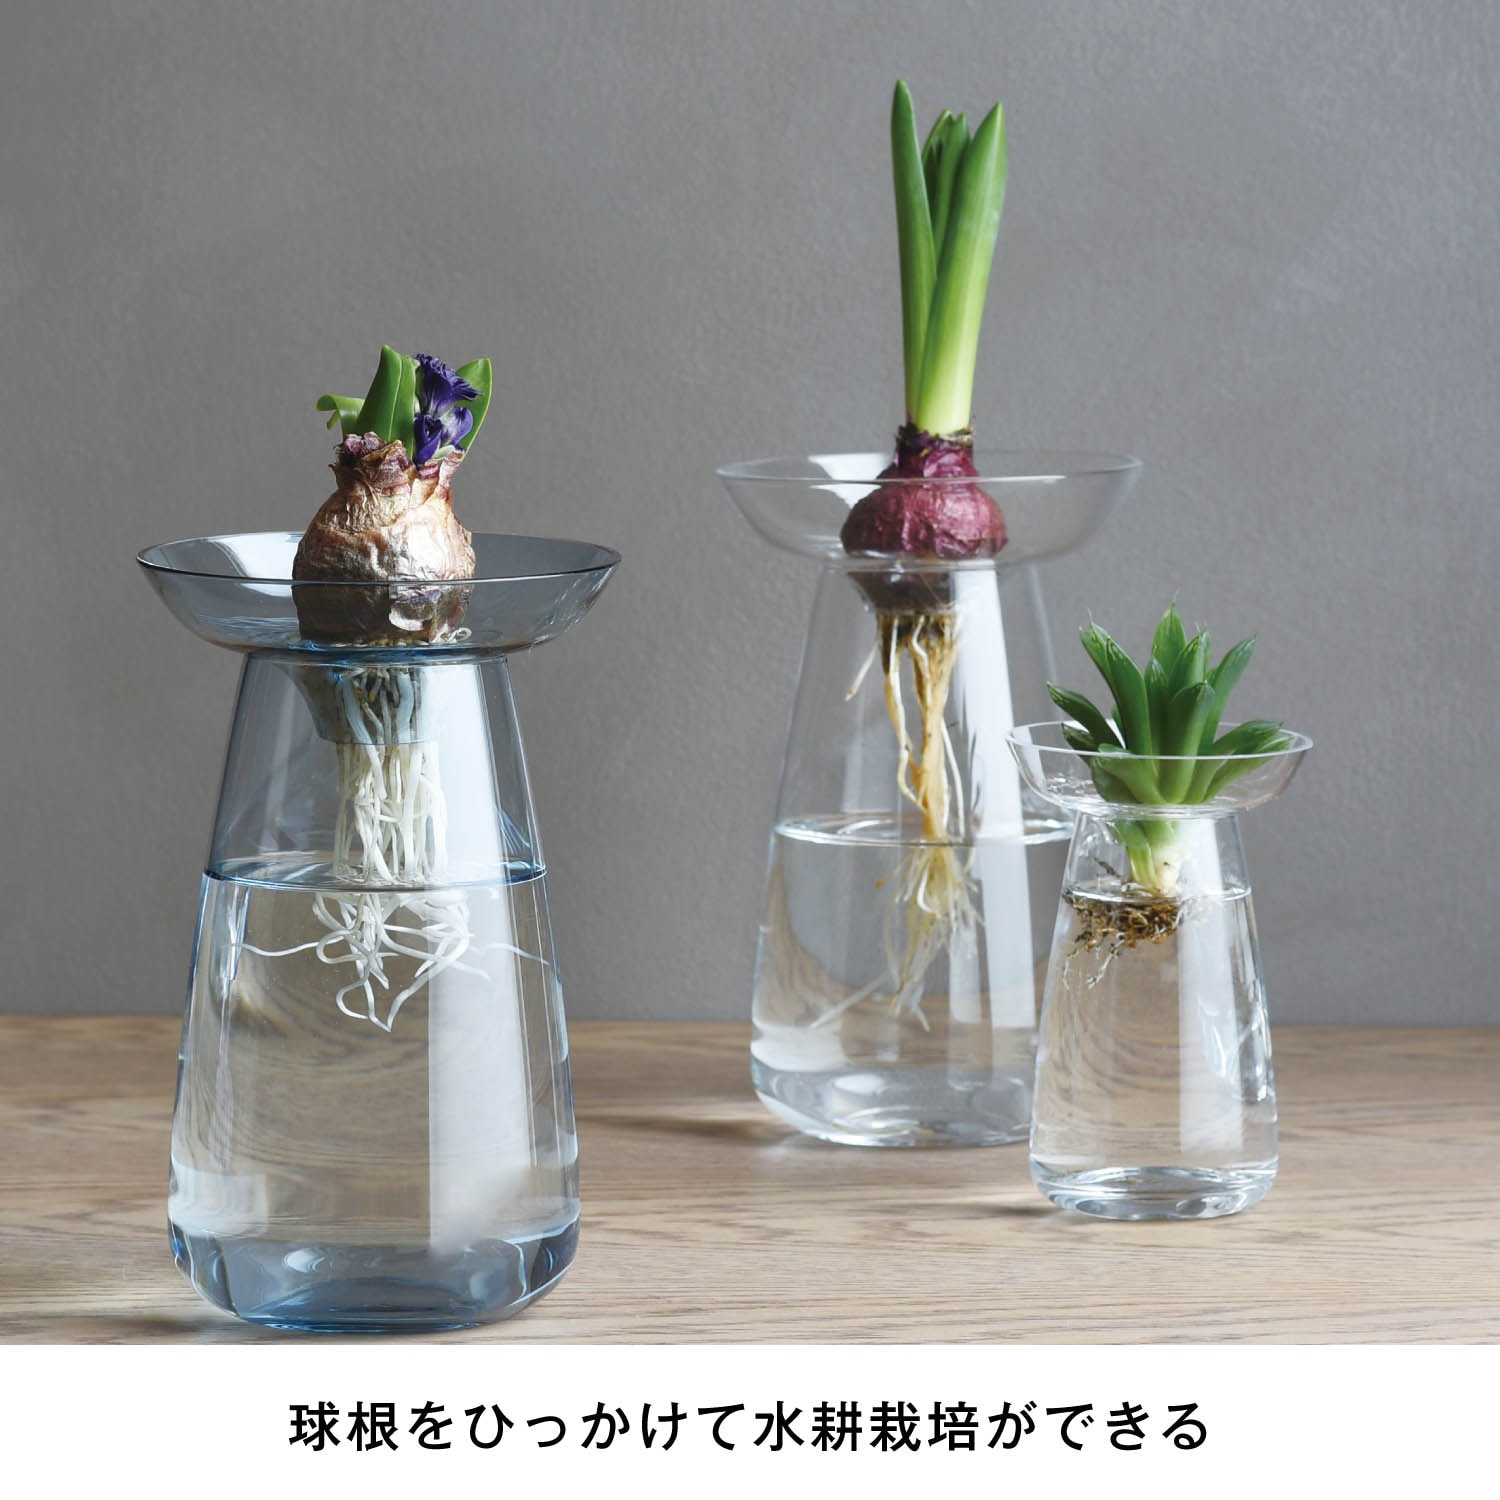 水耕栽培が愉しめる花瓶 Aqua Culture Vase キントー Kinto 通販のベルメゾンネット